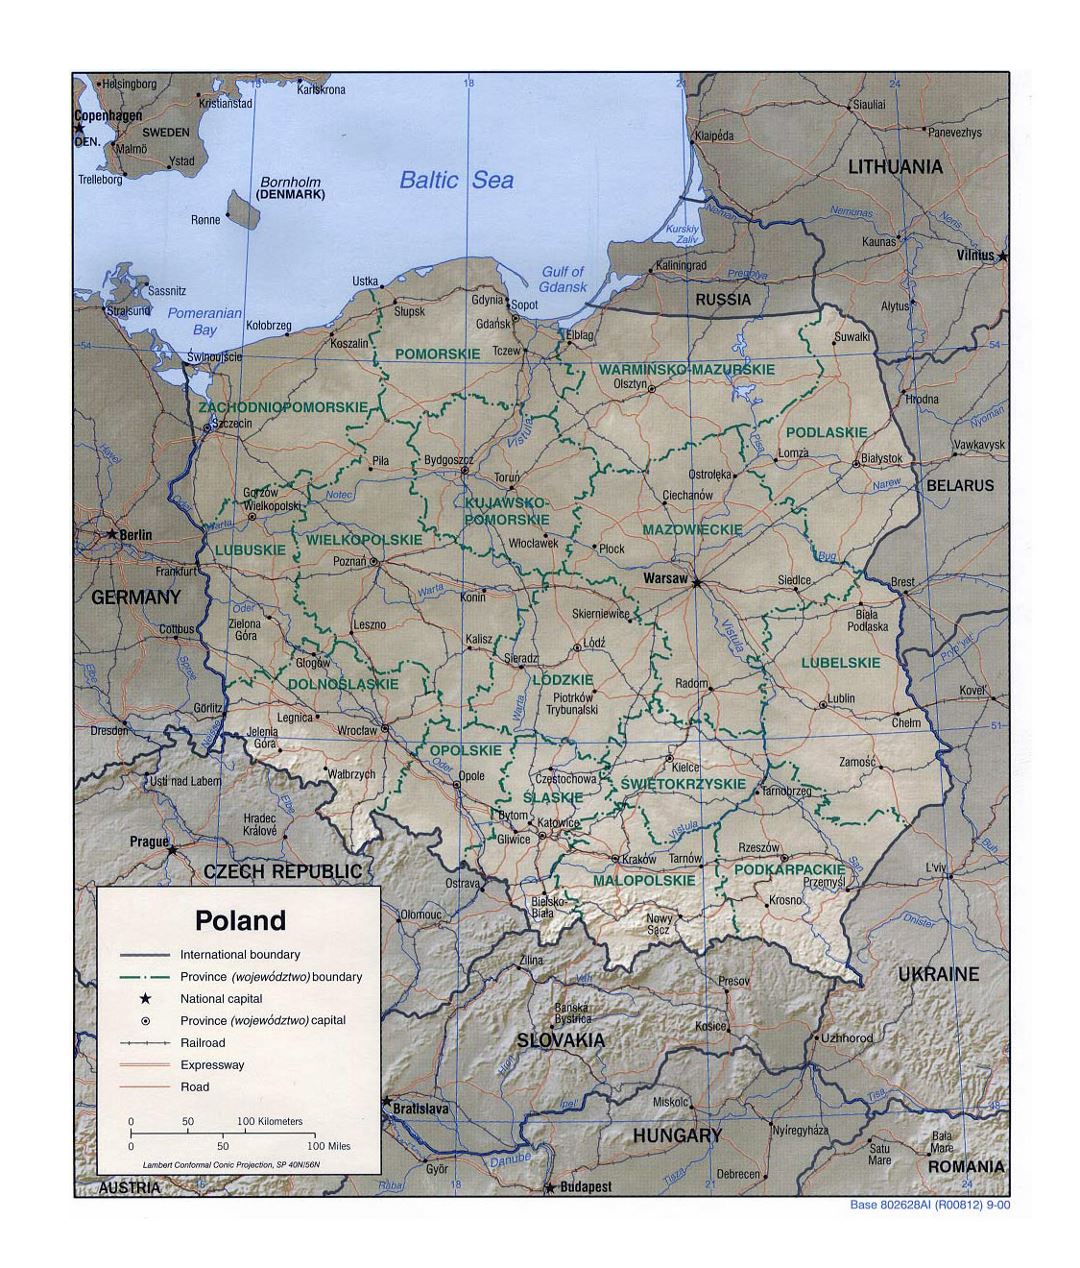 Detallado mapa político y administrativo de Polonia con alivio, carreteras, vías férreas y principales ciudades - 2000